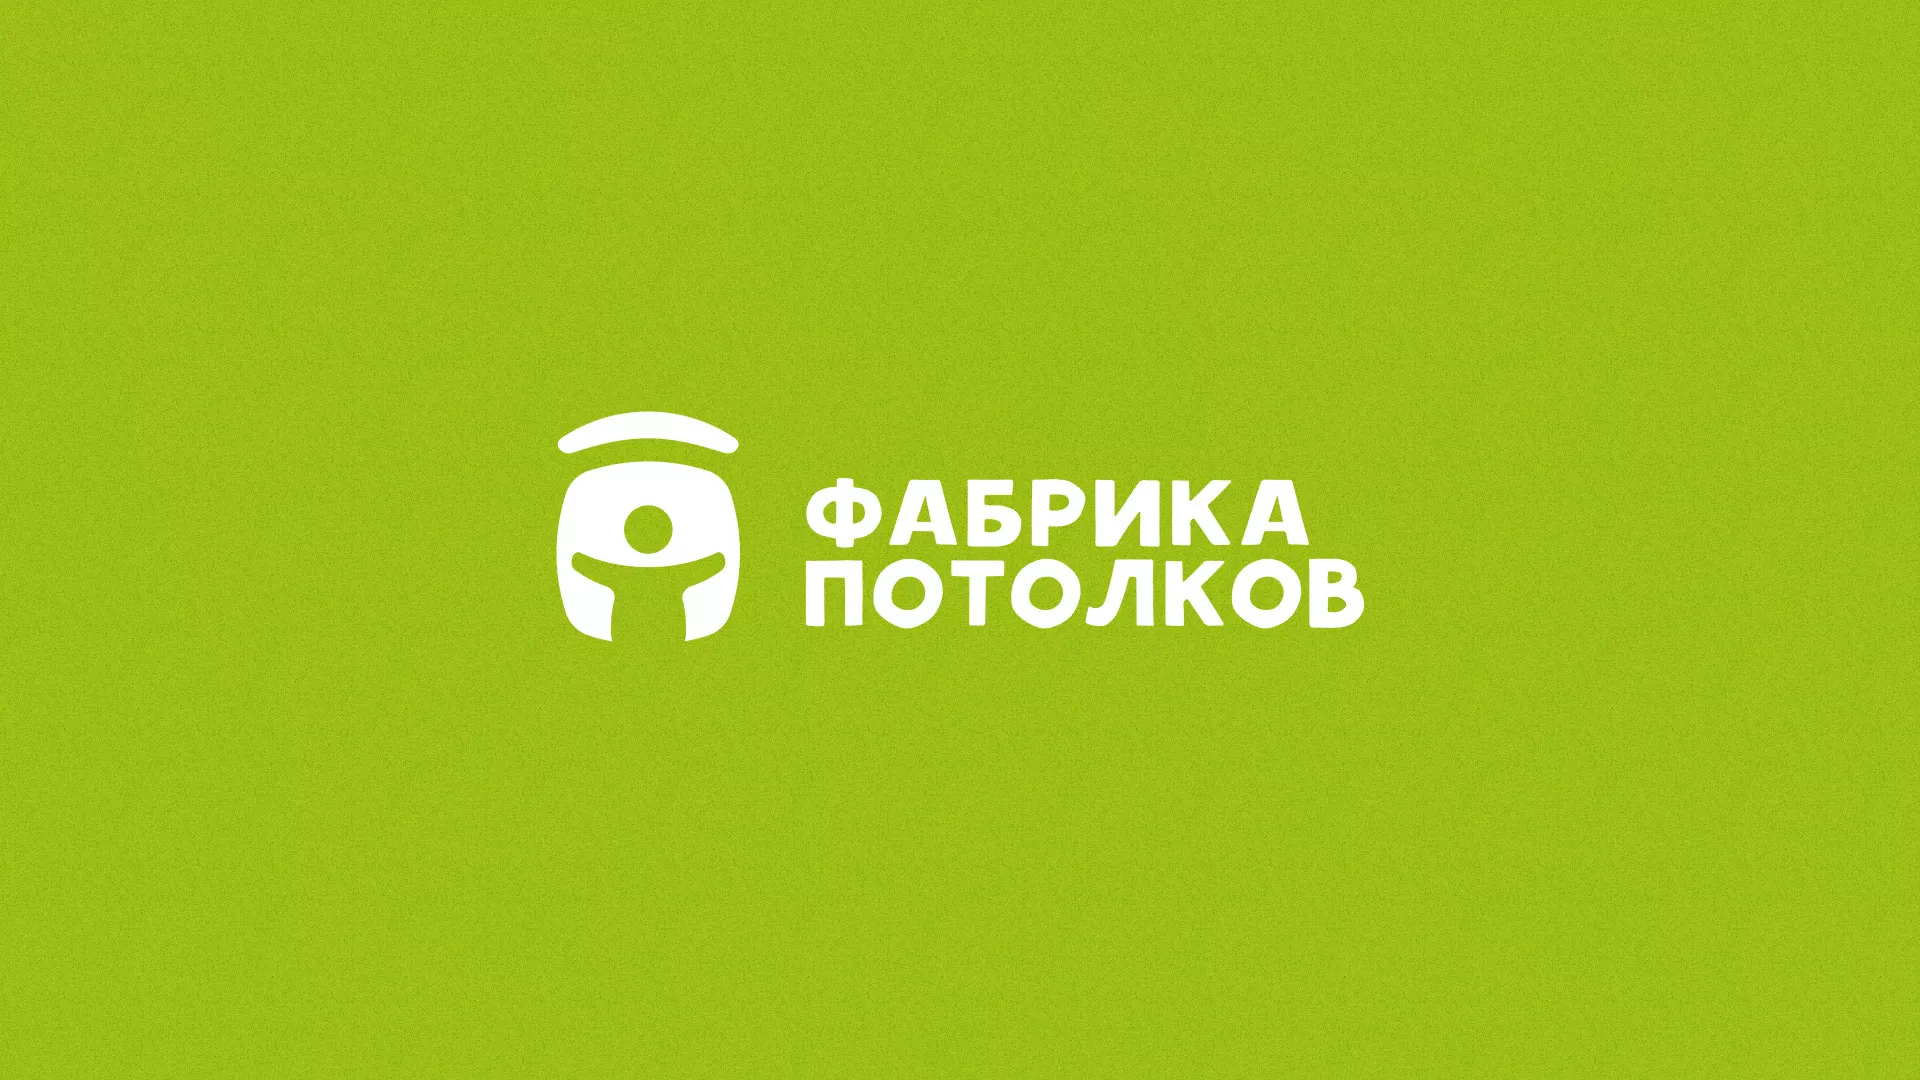 Разработка логотипа для производства натяжных потолков в Богородске